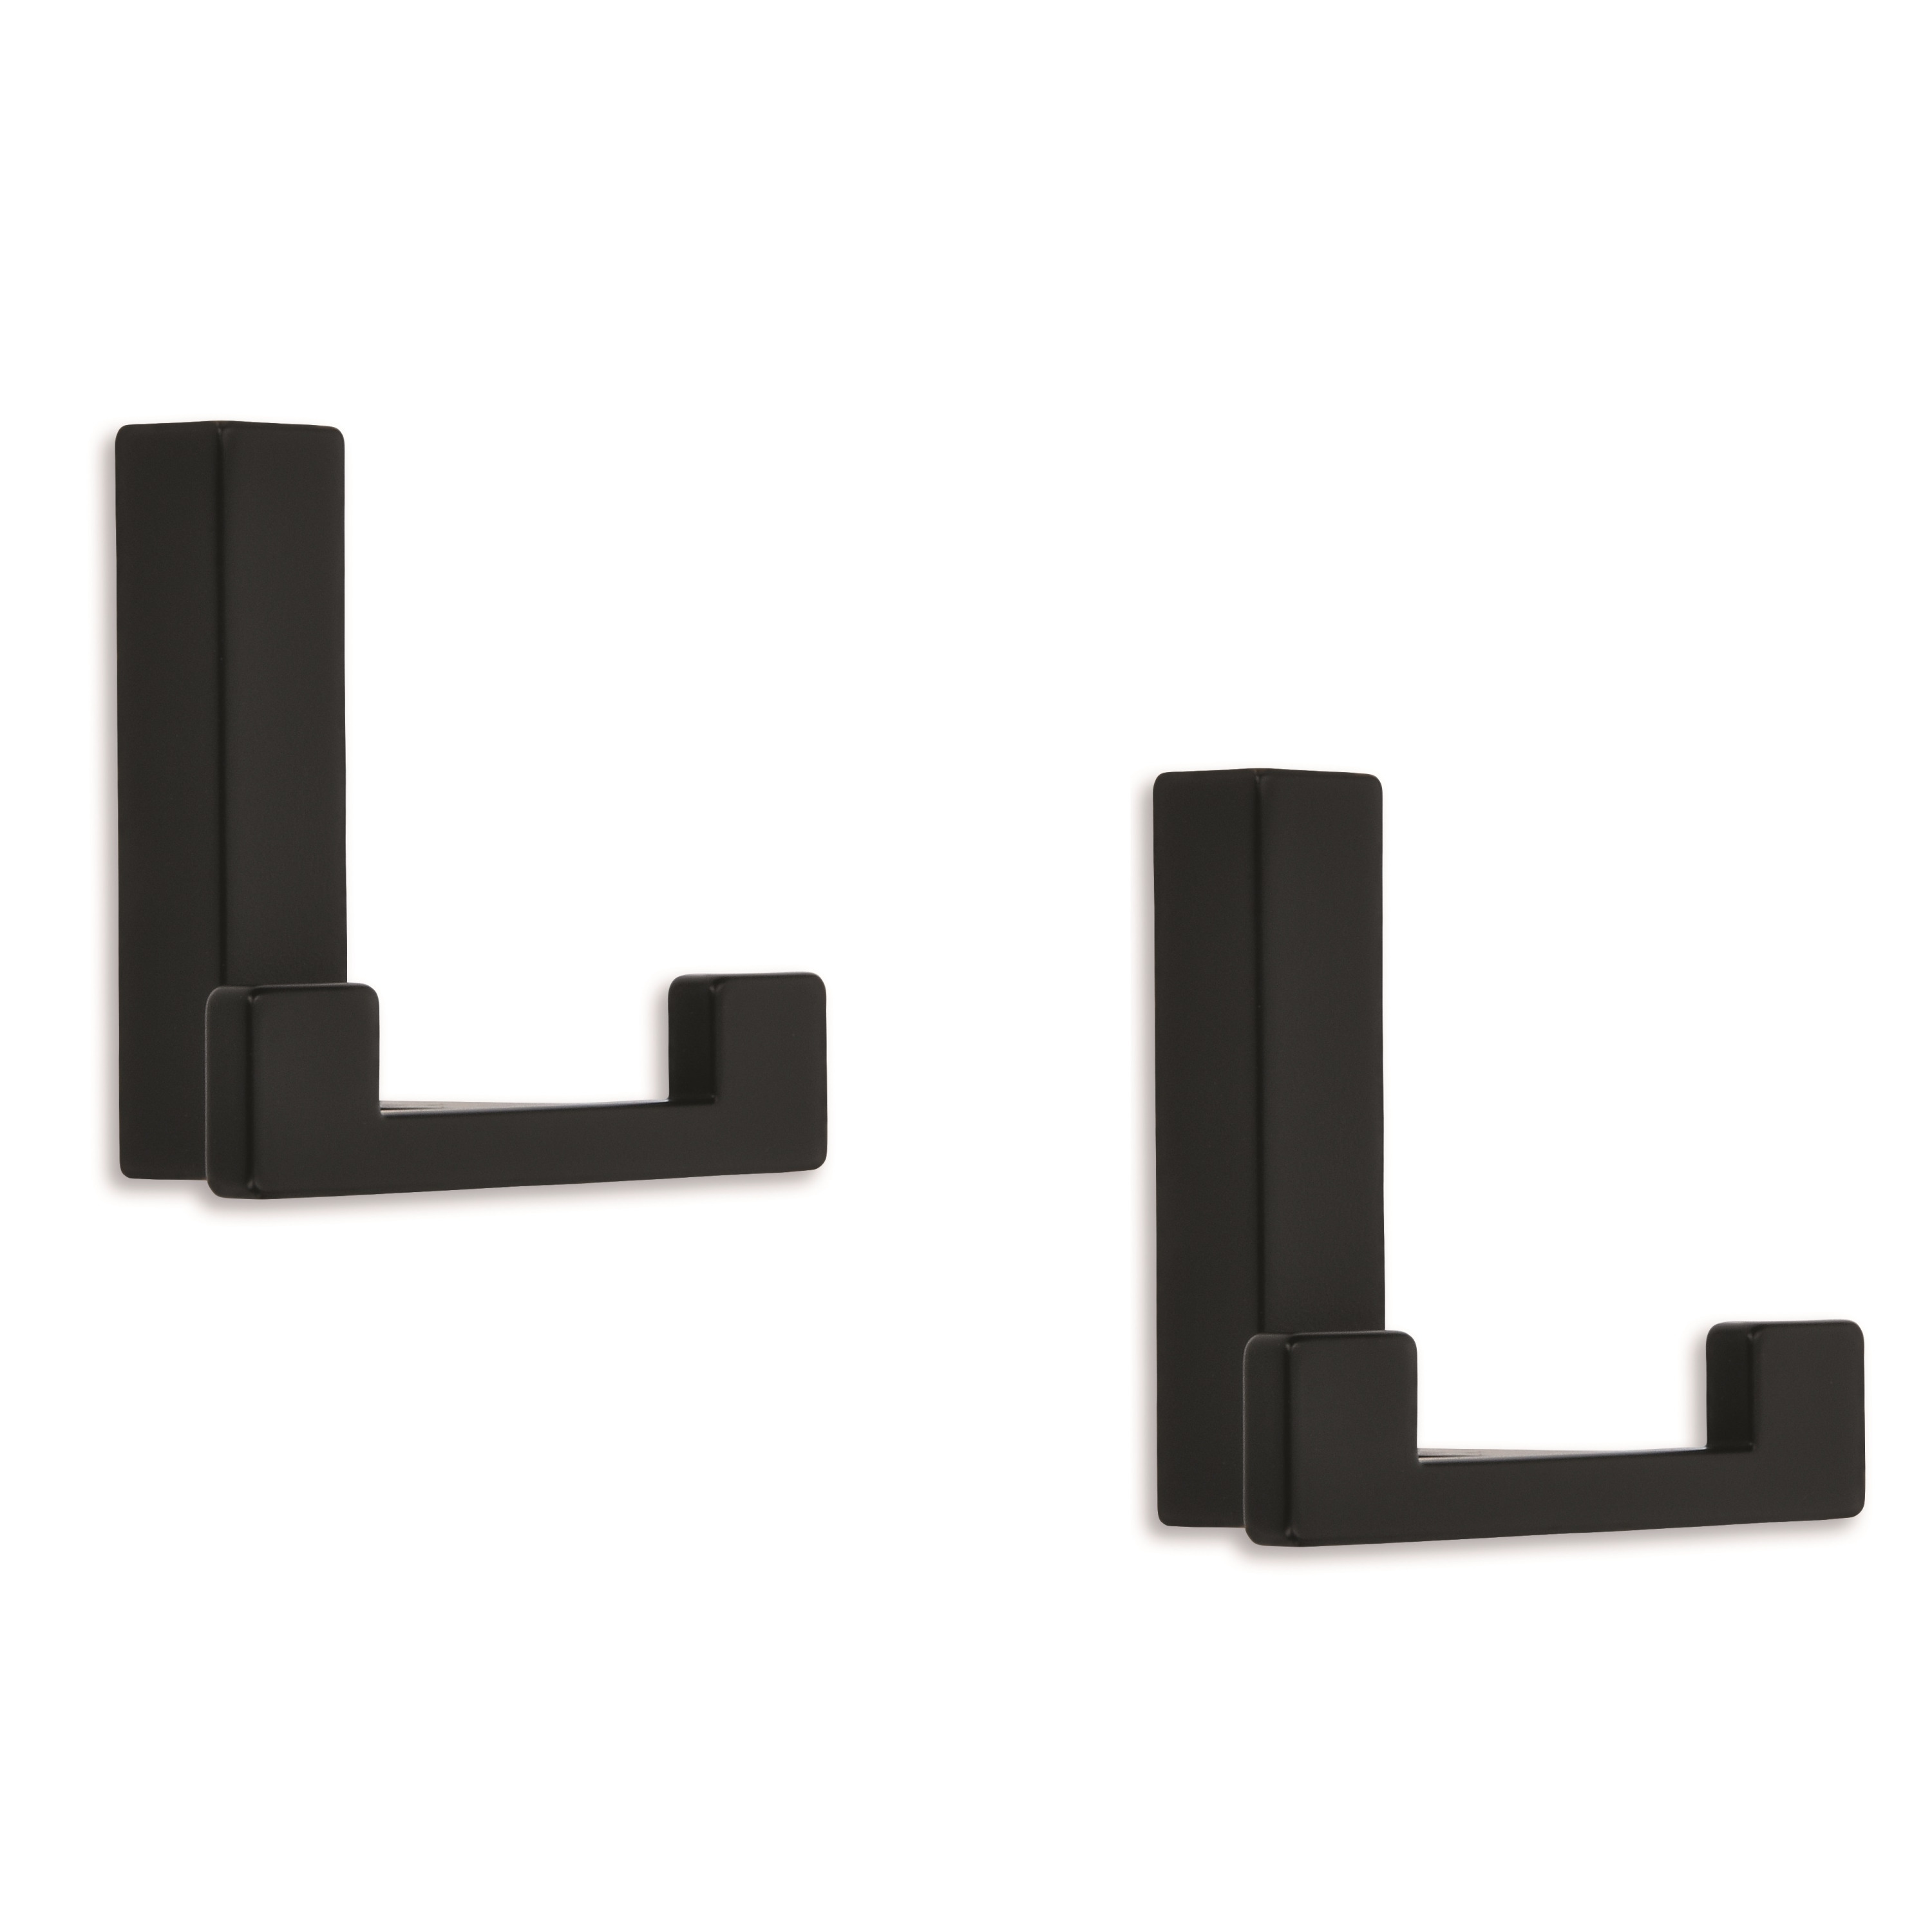 4x Luxe kapstokhaken-jashaken-kapstokhaakjes metaal modern zwart dubbele haak 4 x 6,1 cm